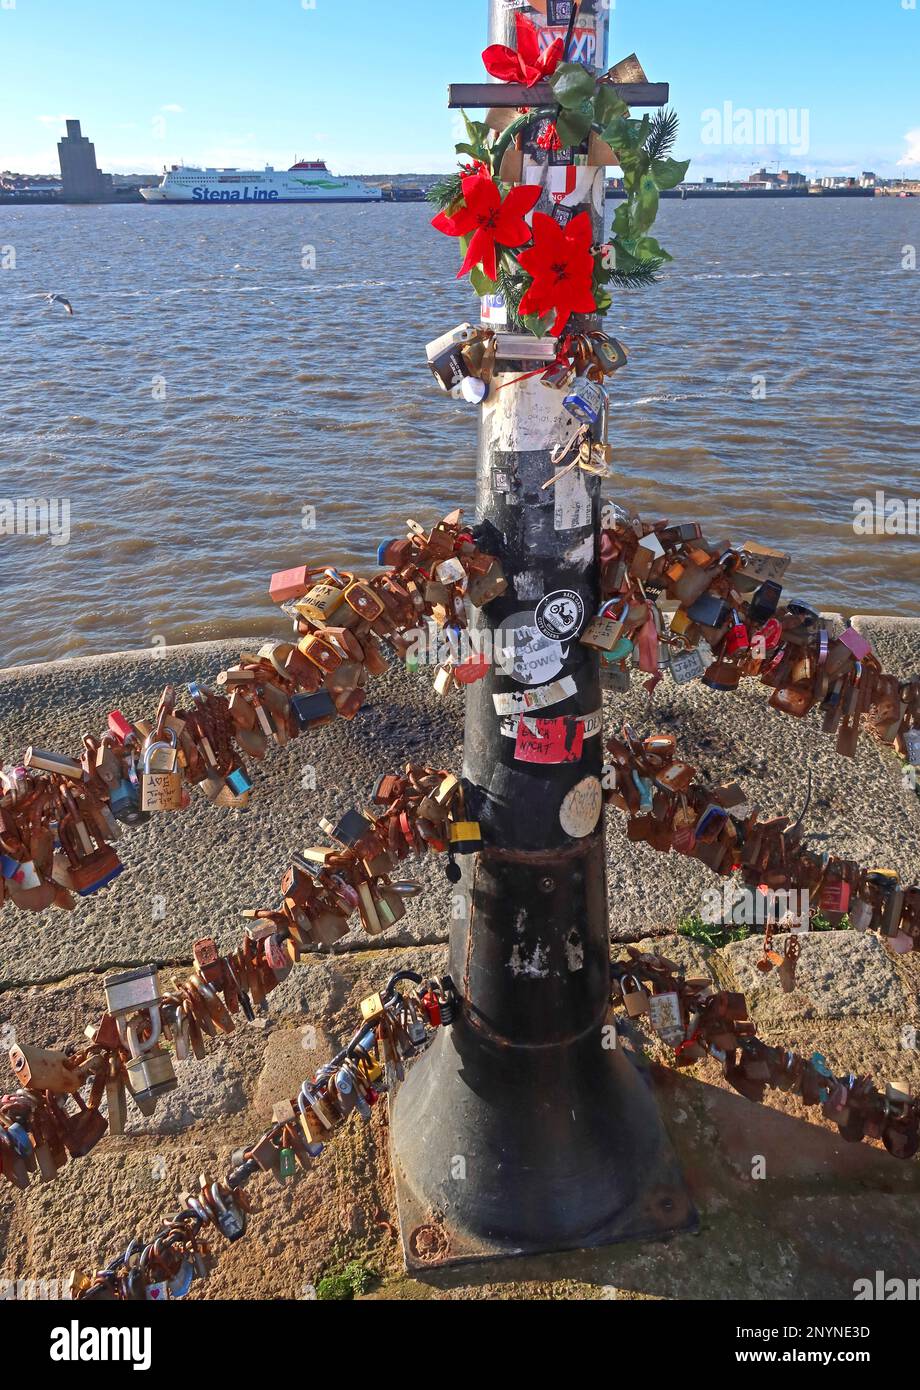 J'adore les cadenas sur les chaînes à la promenade de la rivière Mersey, Pier Head, Royal Albert Dock, Liverpool, Merseyside, ANGLETERRE, ROYAUME-UNI, L3 4AF Banque D'Images